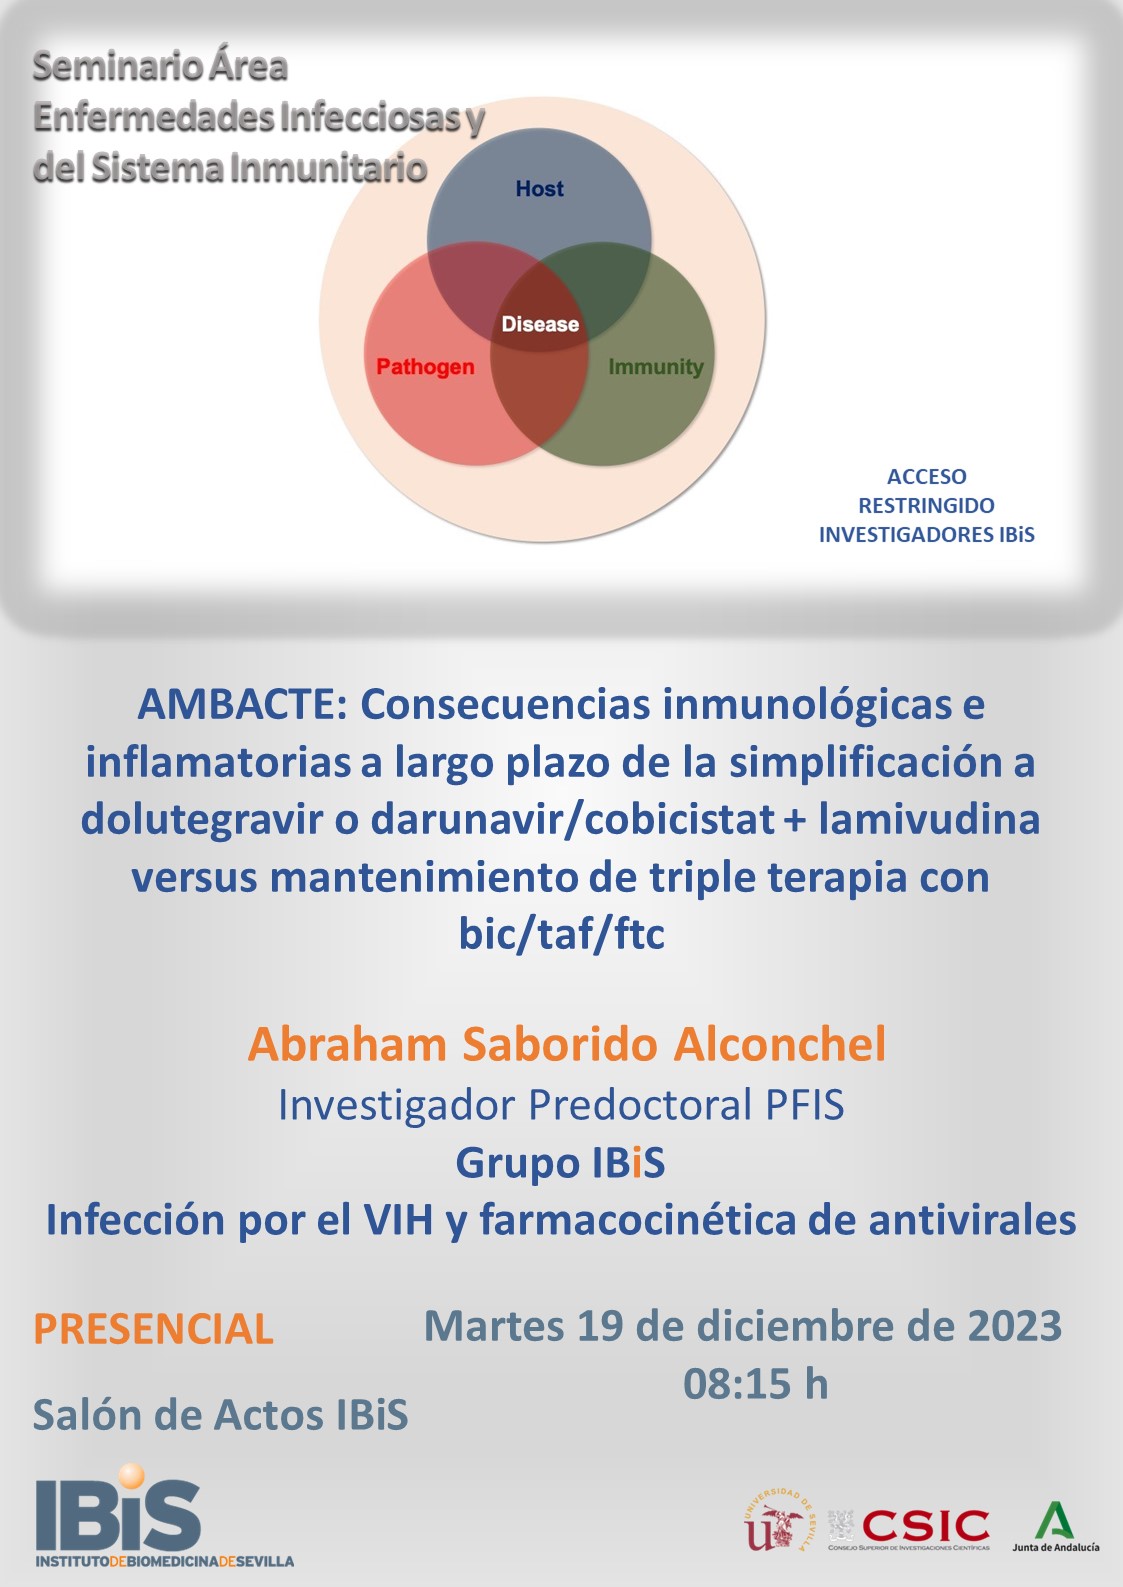 Poster: AMBACTE: Consecuencias inmunológicas e inflamatorias a largo plazo de la simplificación a dolutegravir o darunavir/cobicistat + lamivudina versus mantenimiento de triple terapia con bic/taf/ftc